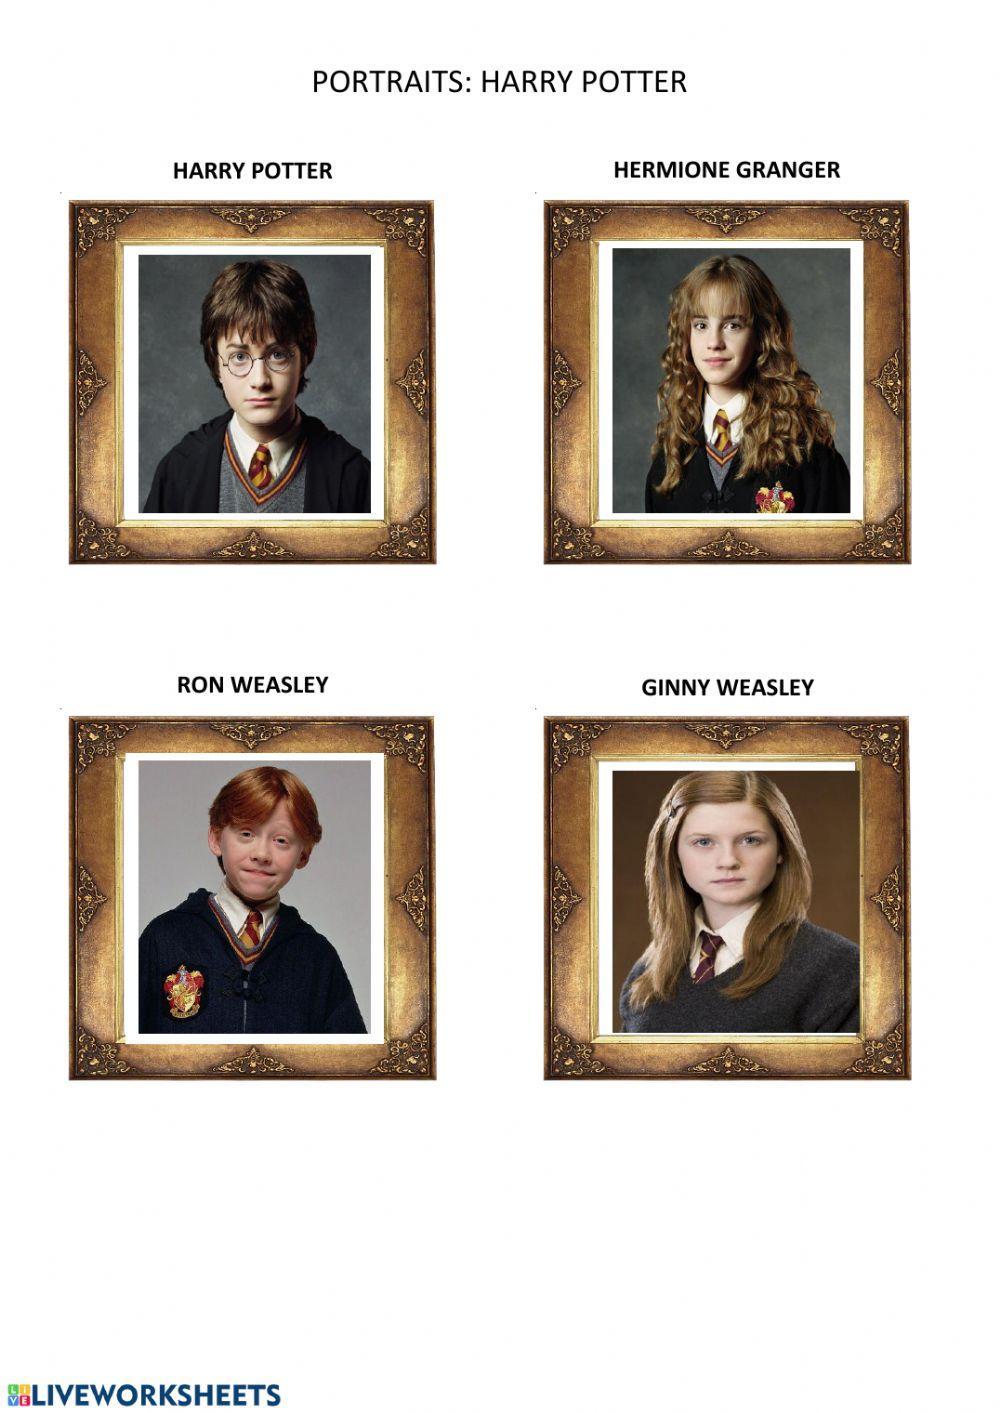 Harry Potter Portraits-Physical Description